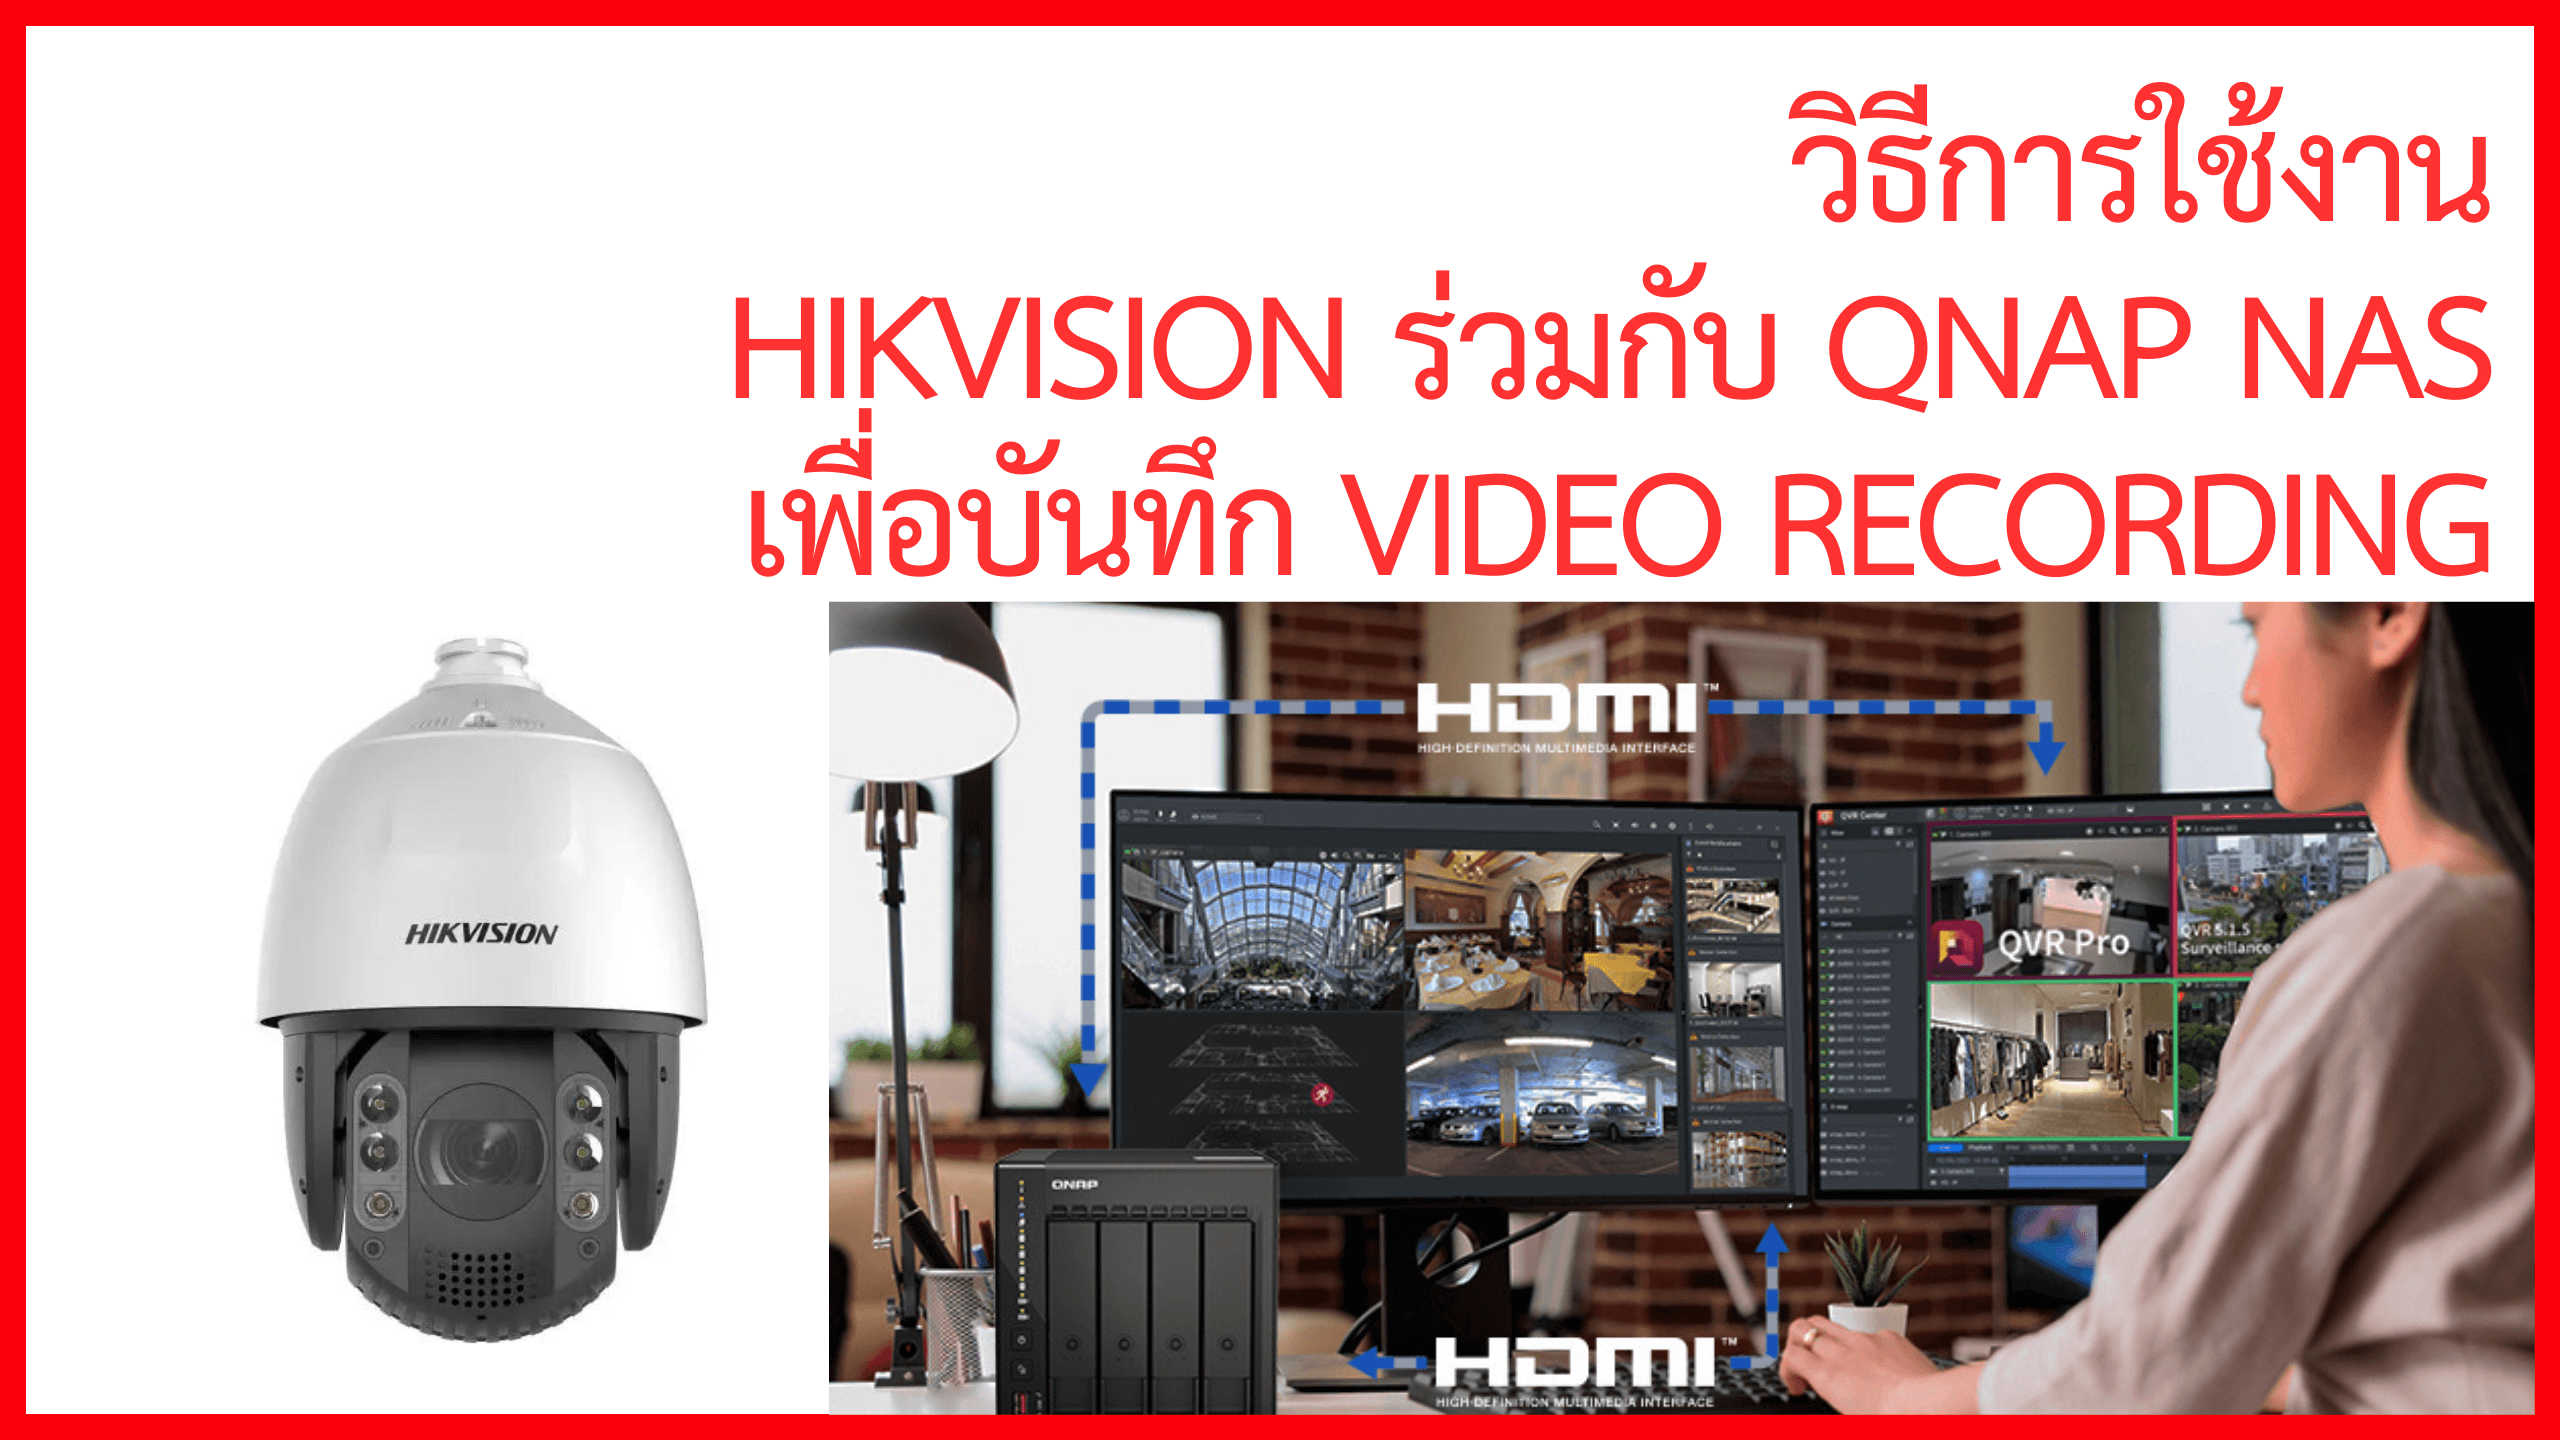 วิธีการใช้งาน HIKVISION ร่วมกับ QNAP NAS เพื่อบันทึก video recording